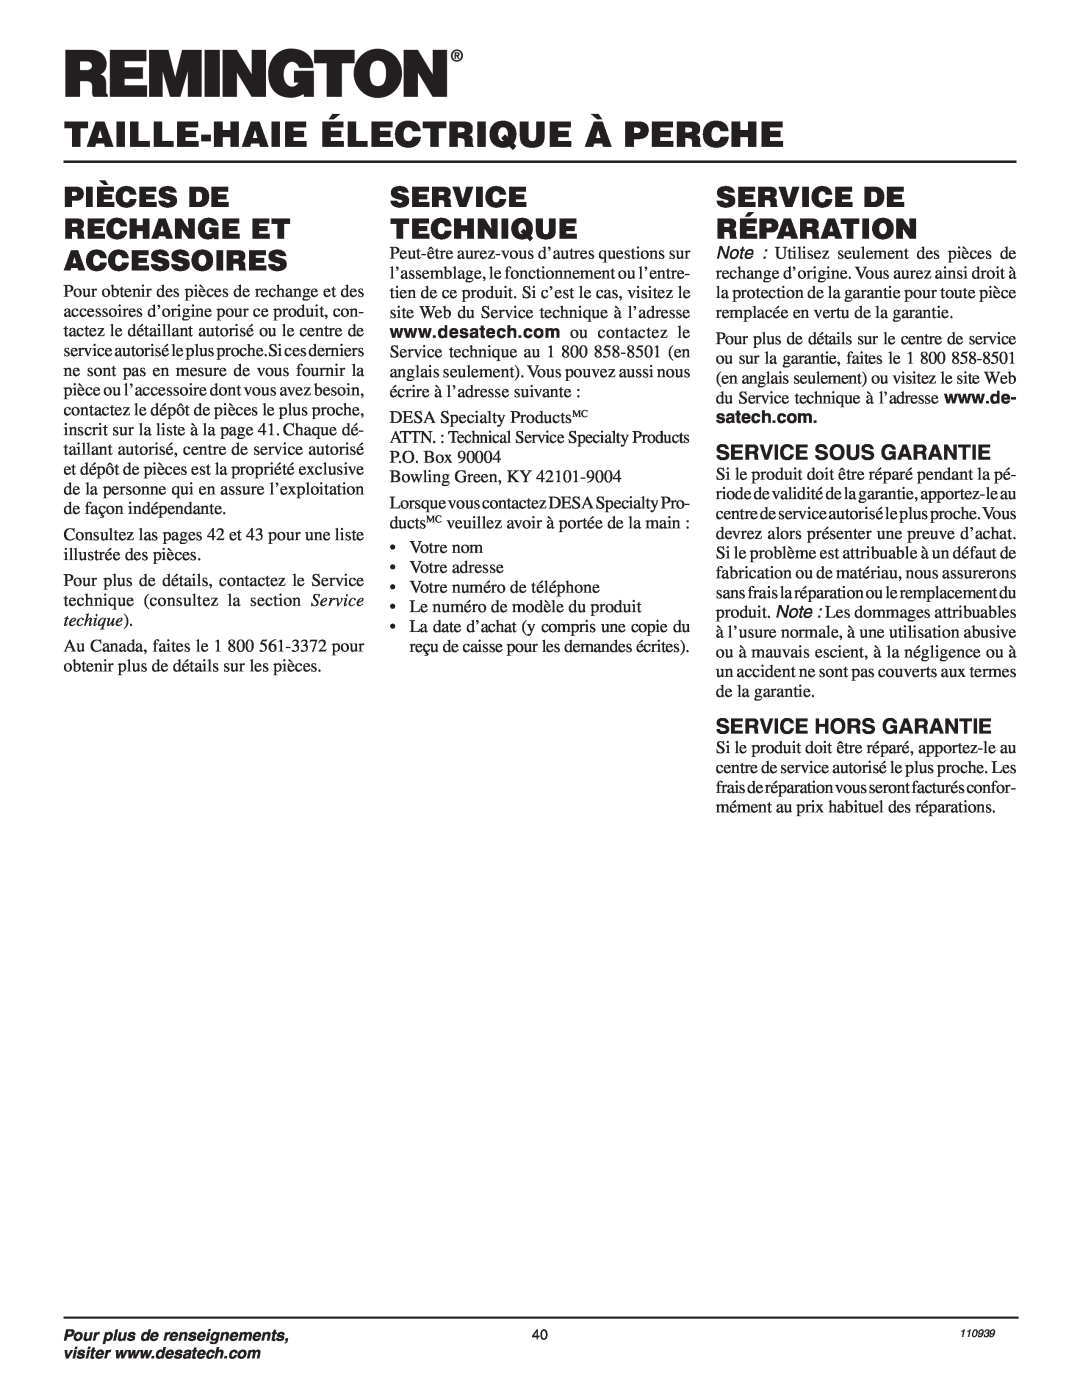 Desa 110946-01A Pièces De Rechange Et Accessoires, Service Technique, Service De Réparation, Service Sous Garantie 